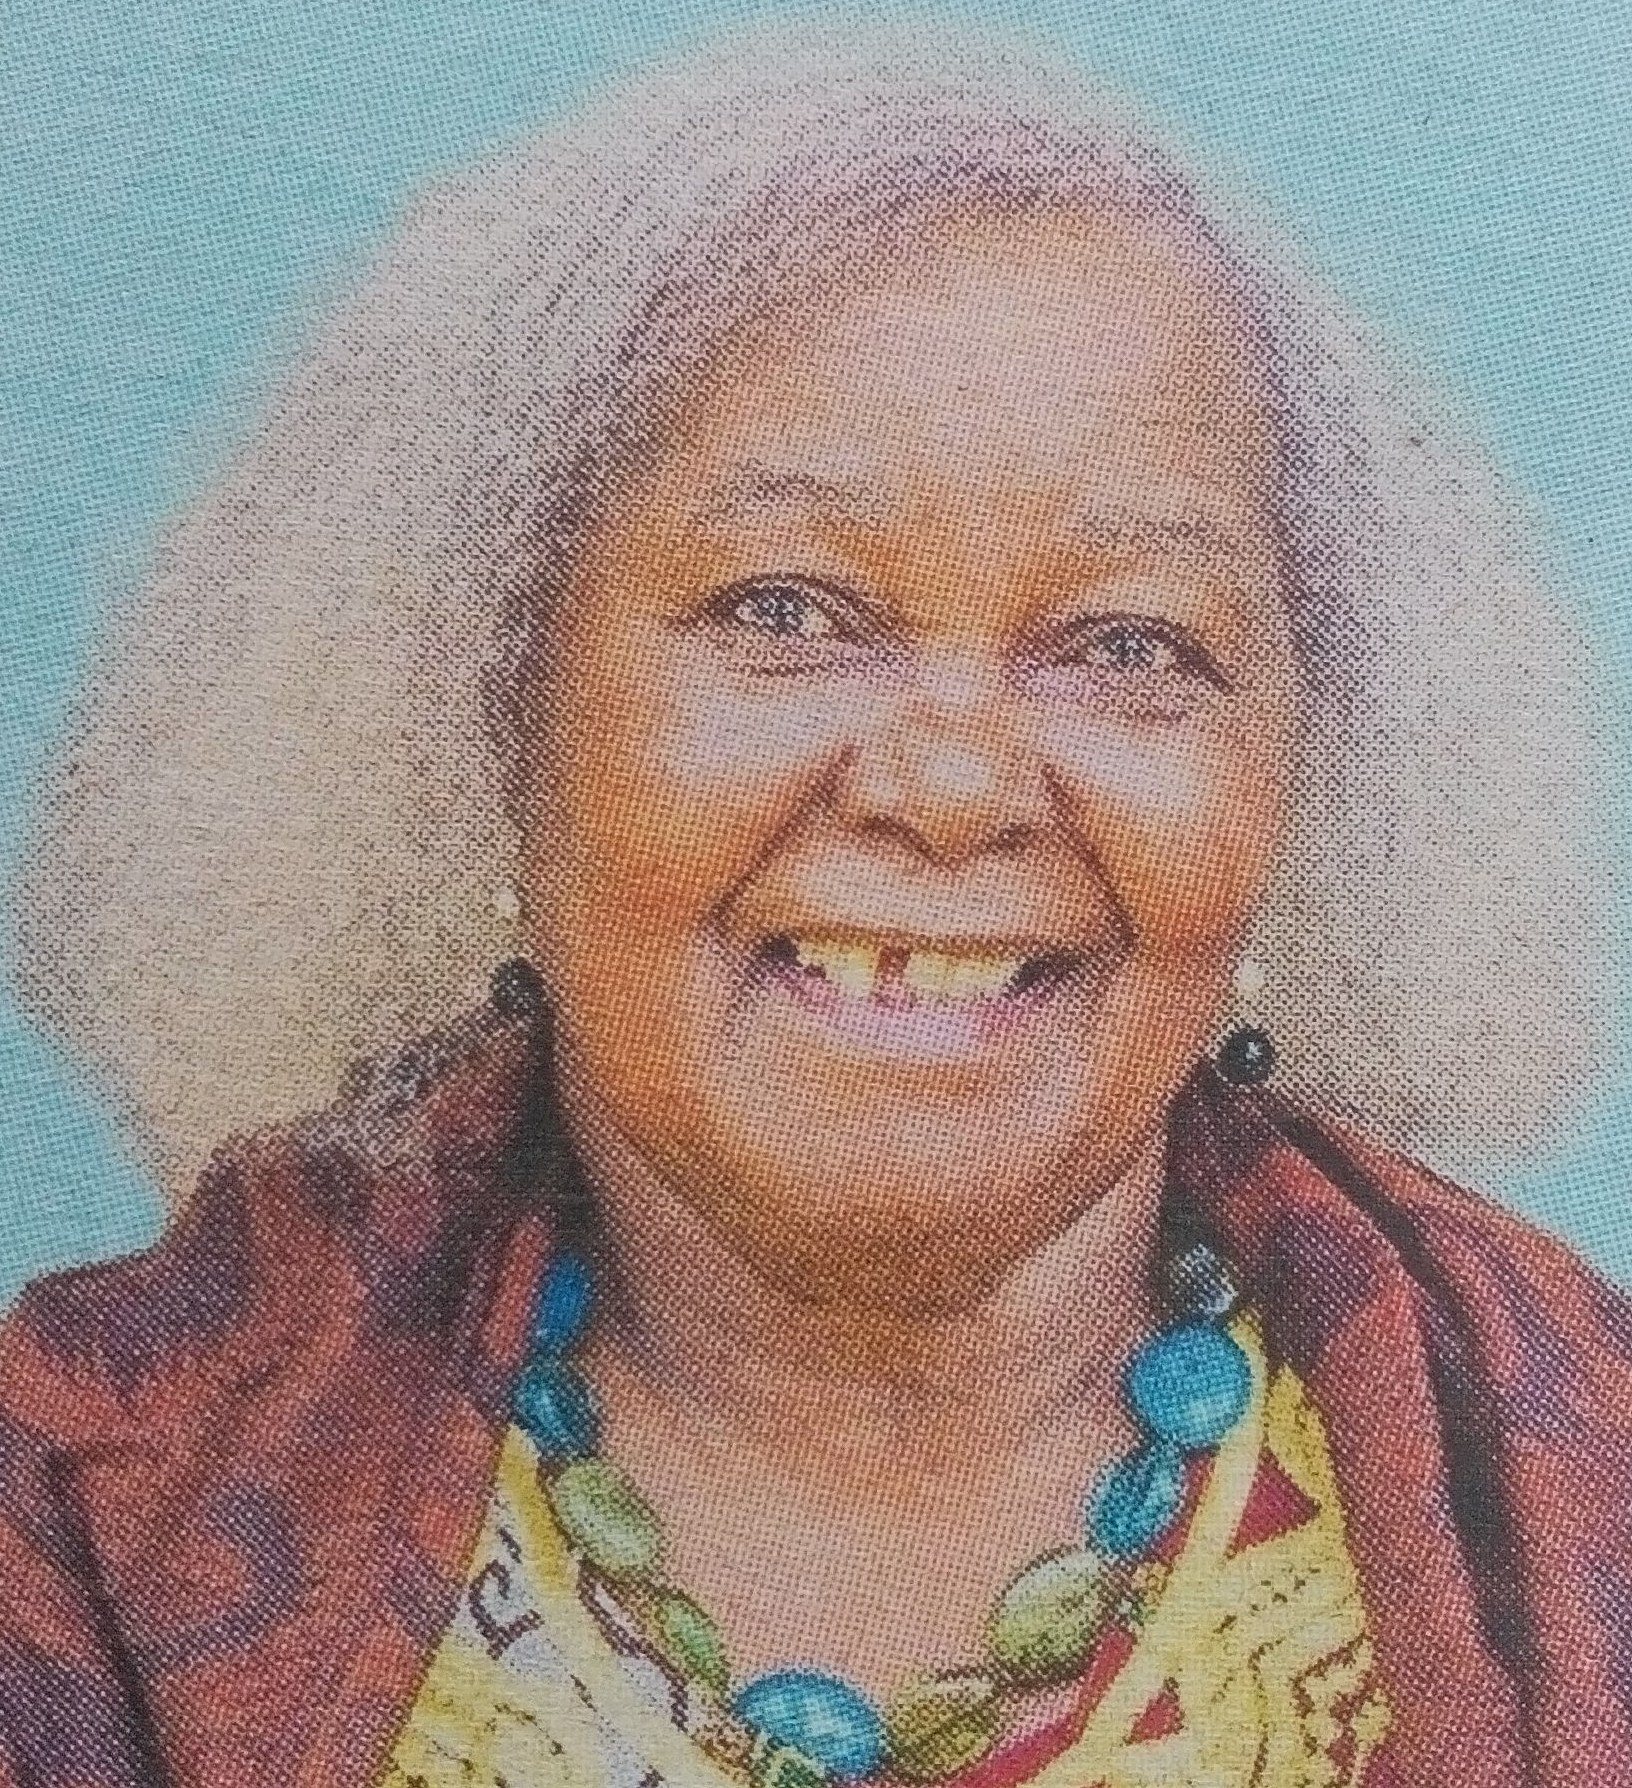 Obituary Image of Beatrice Muthoni Mimano